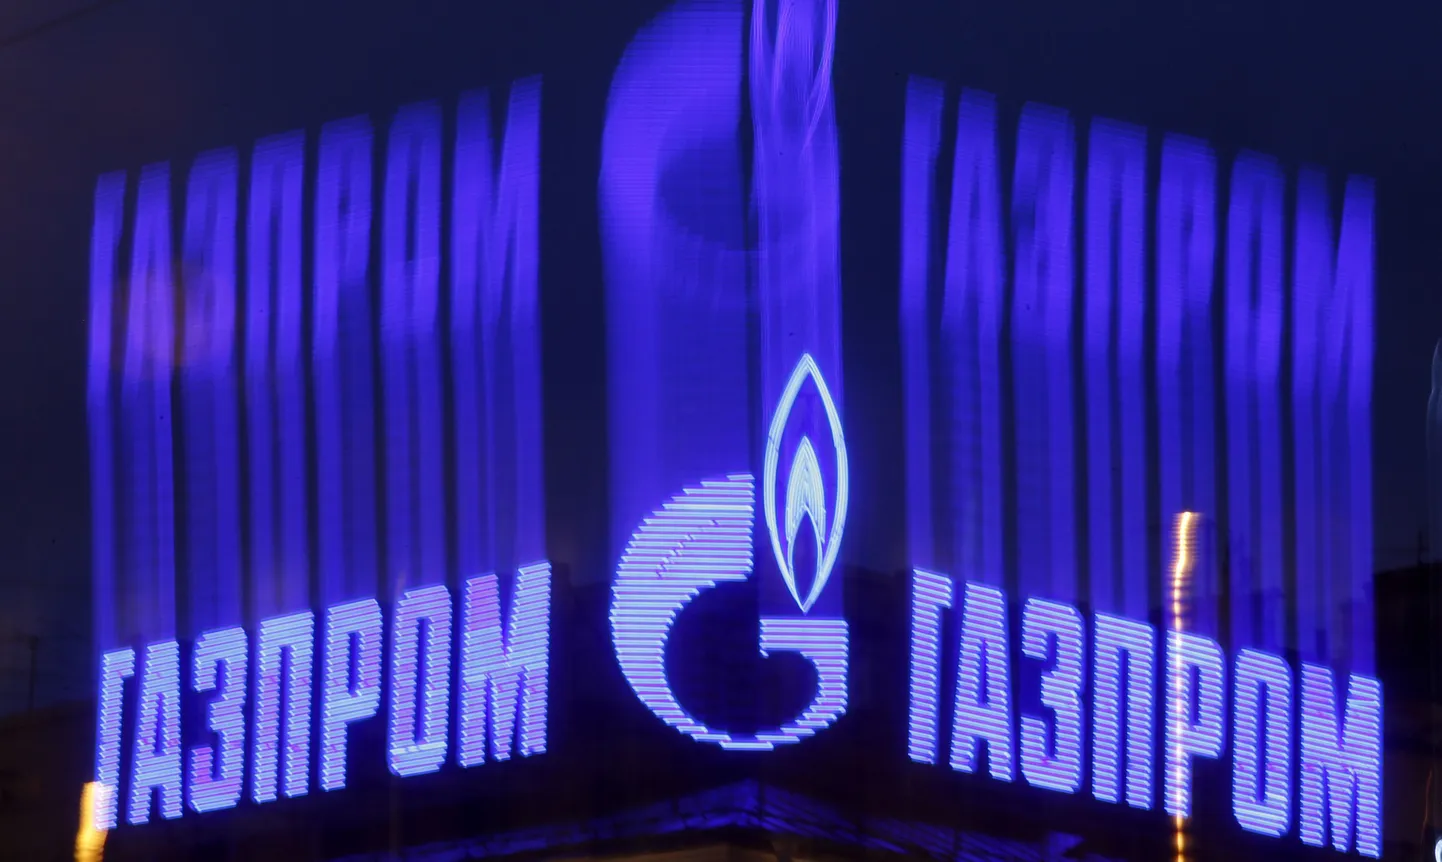 Газпром - крупнейшая газовая компания в мире, российский монополист в области добычи, переработки и продажи природного газа.